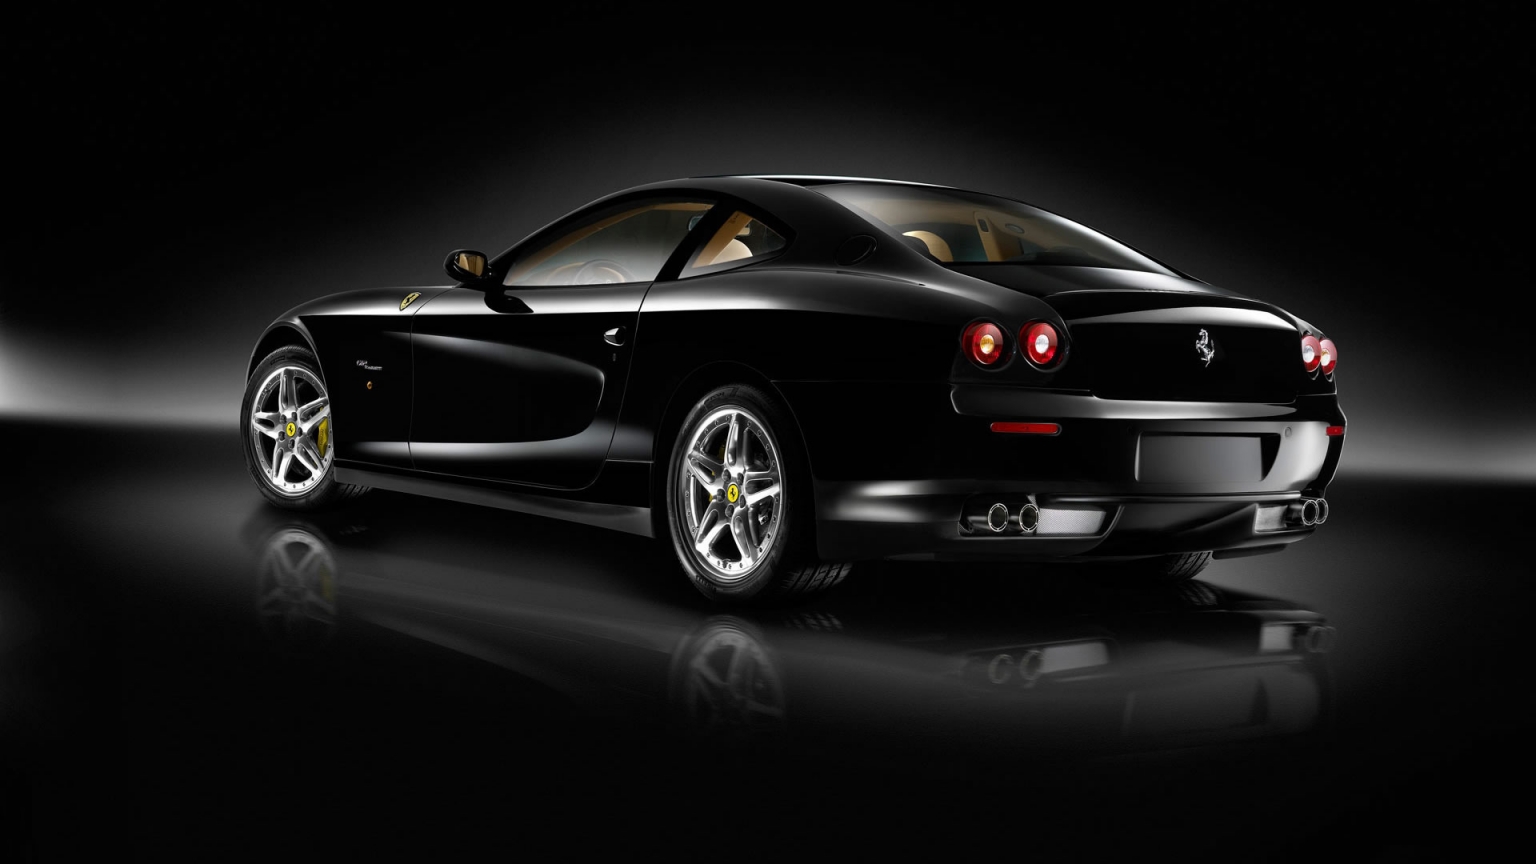 Superb Black Ferrari for 1536 x 864 HDTV resolution